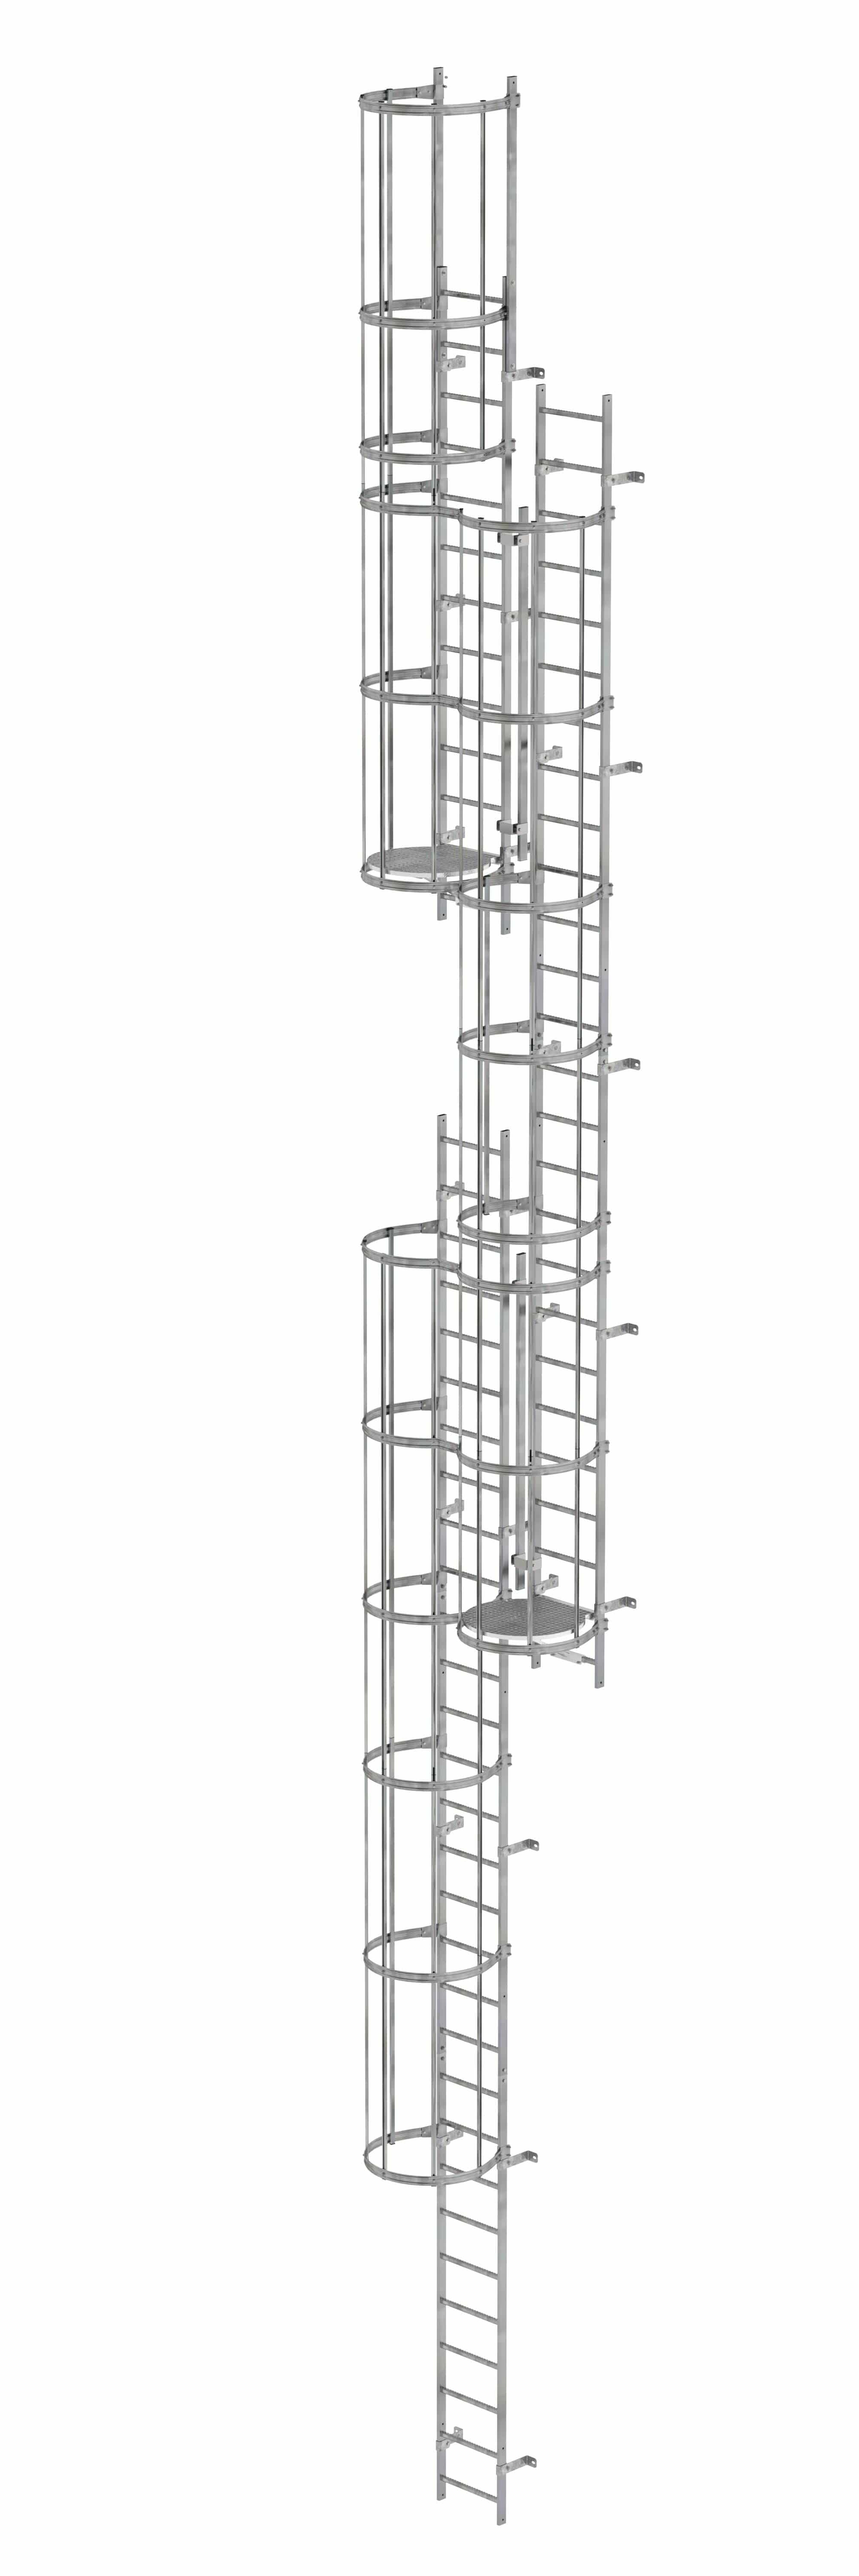 Munk Mehrzügige Steigleiter mit Rückenschutz (Maschinen) Stahl verzinkt 14,36m